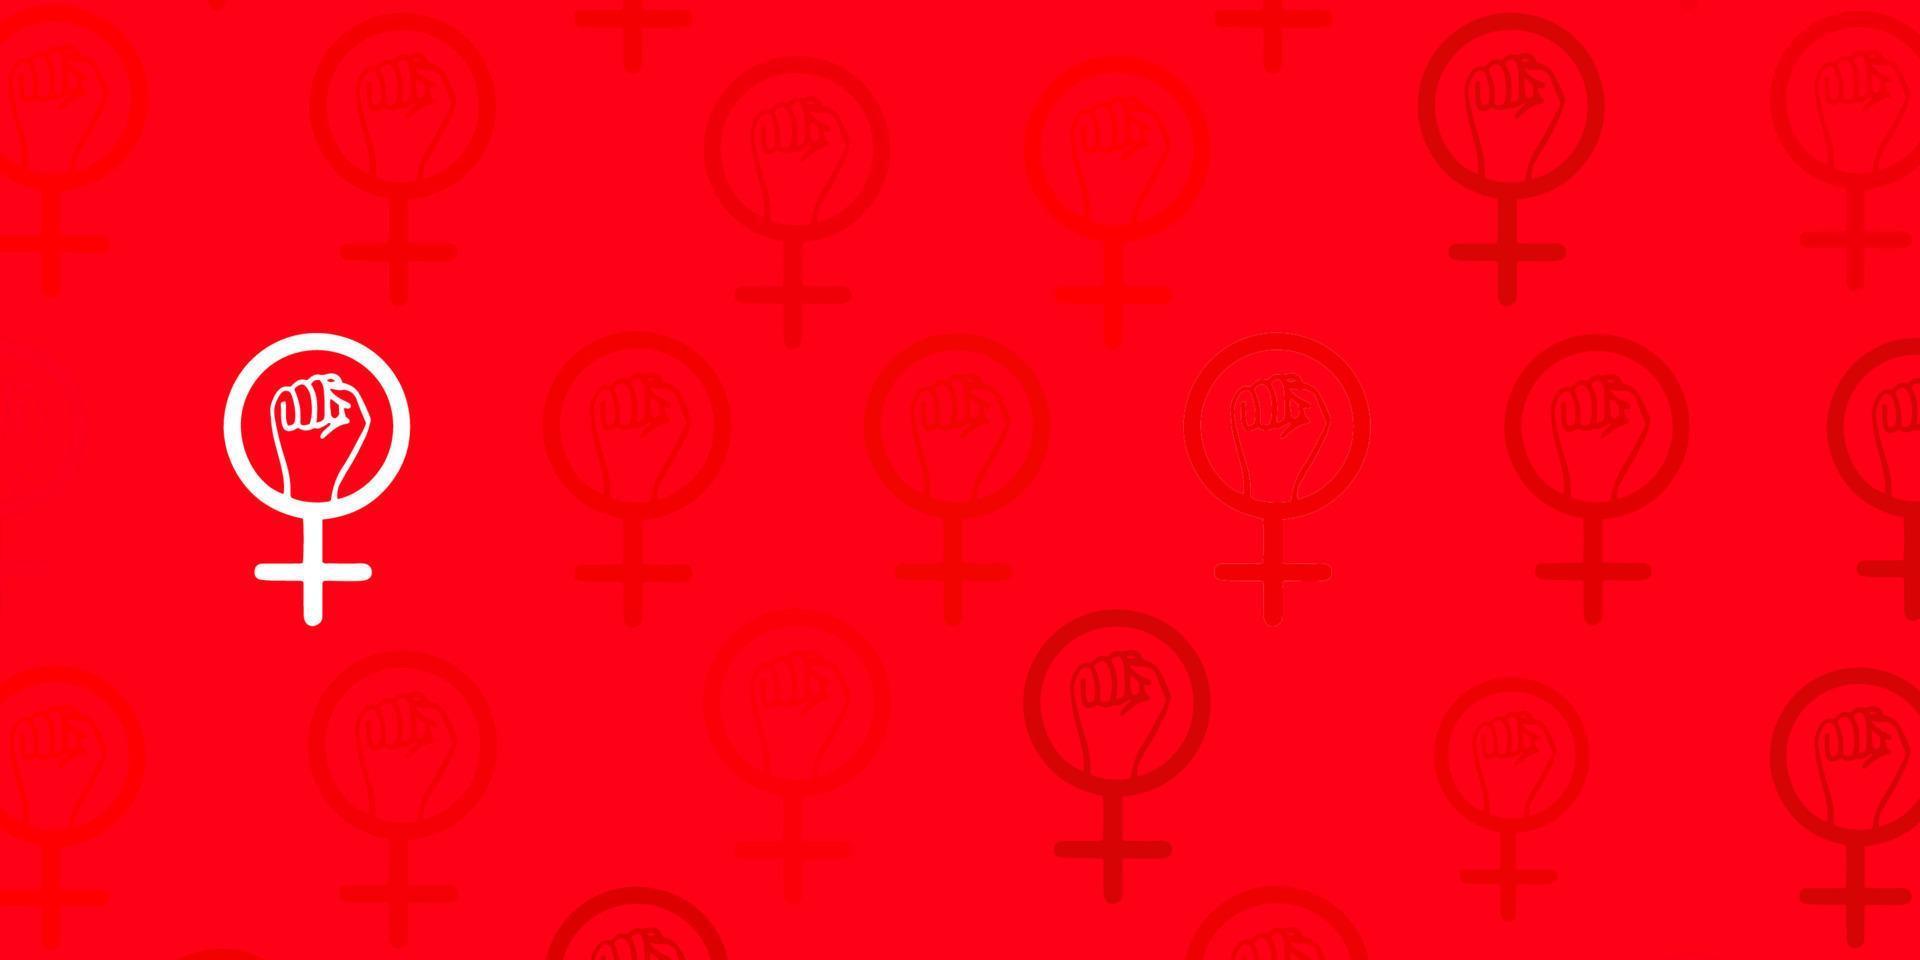 toile de fond de vecteur rouge clair avec des symboles de pouvoir des femmes.